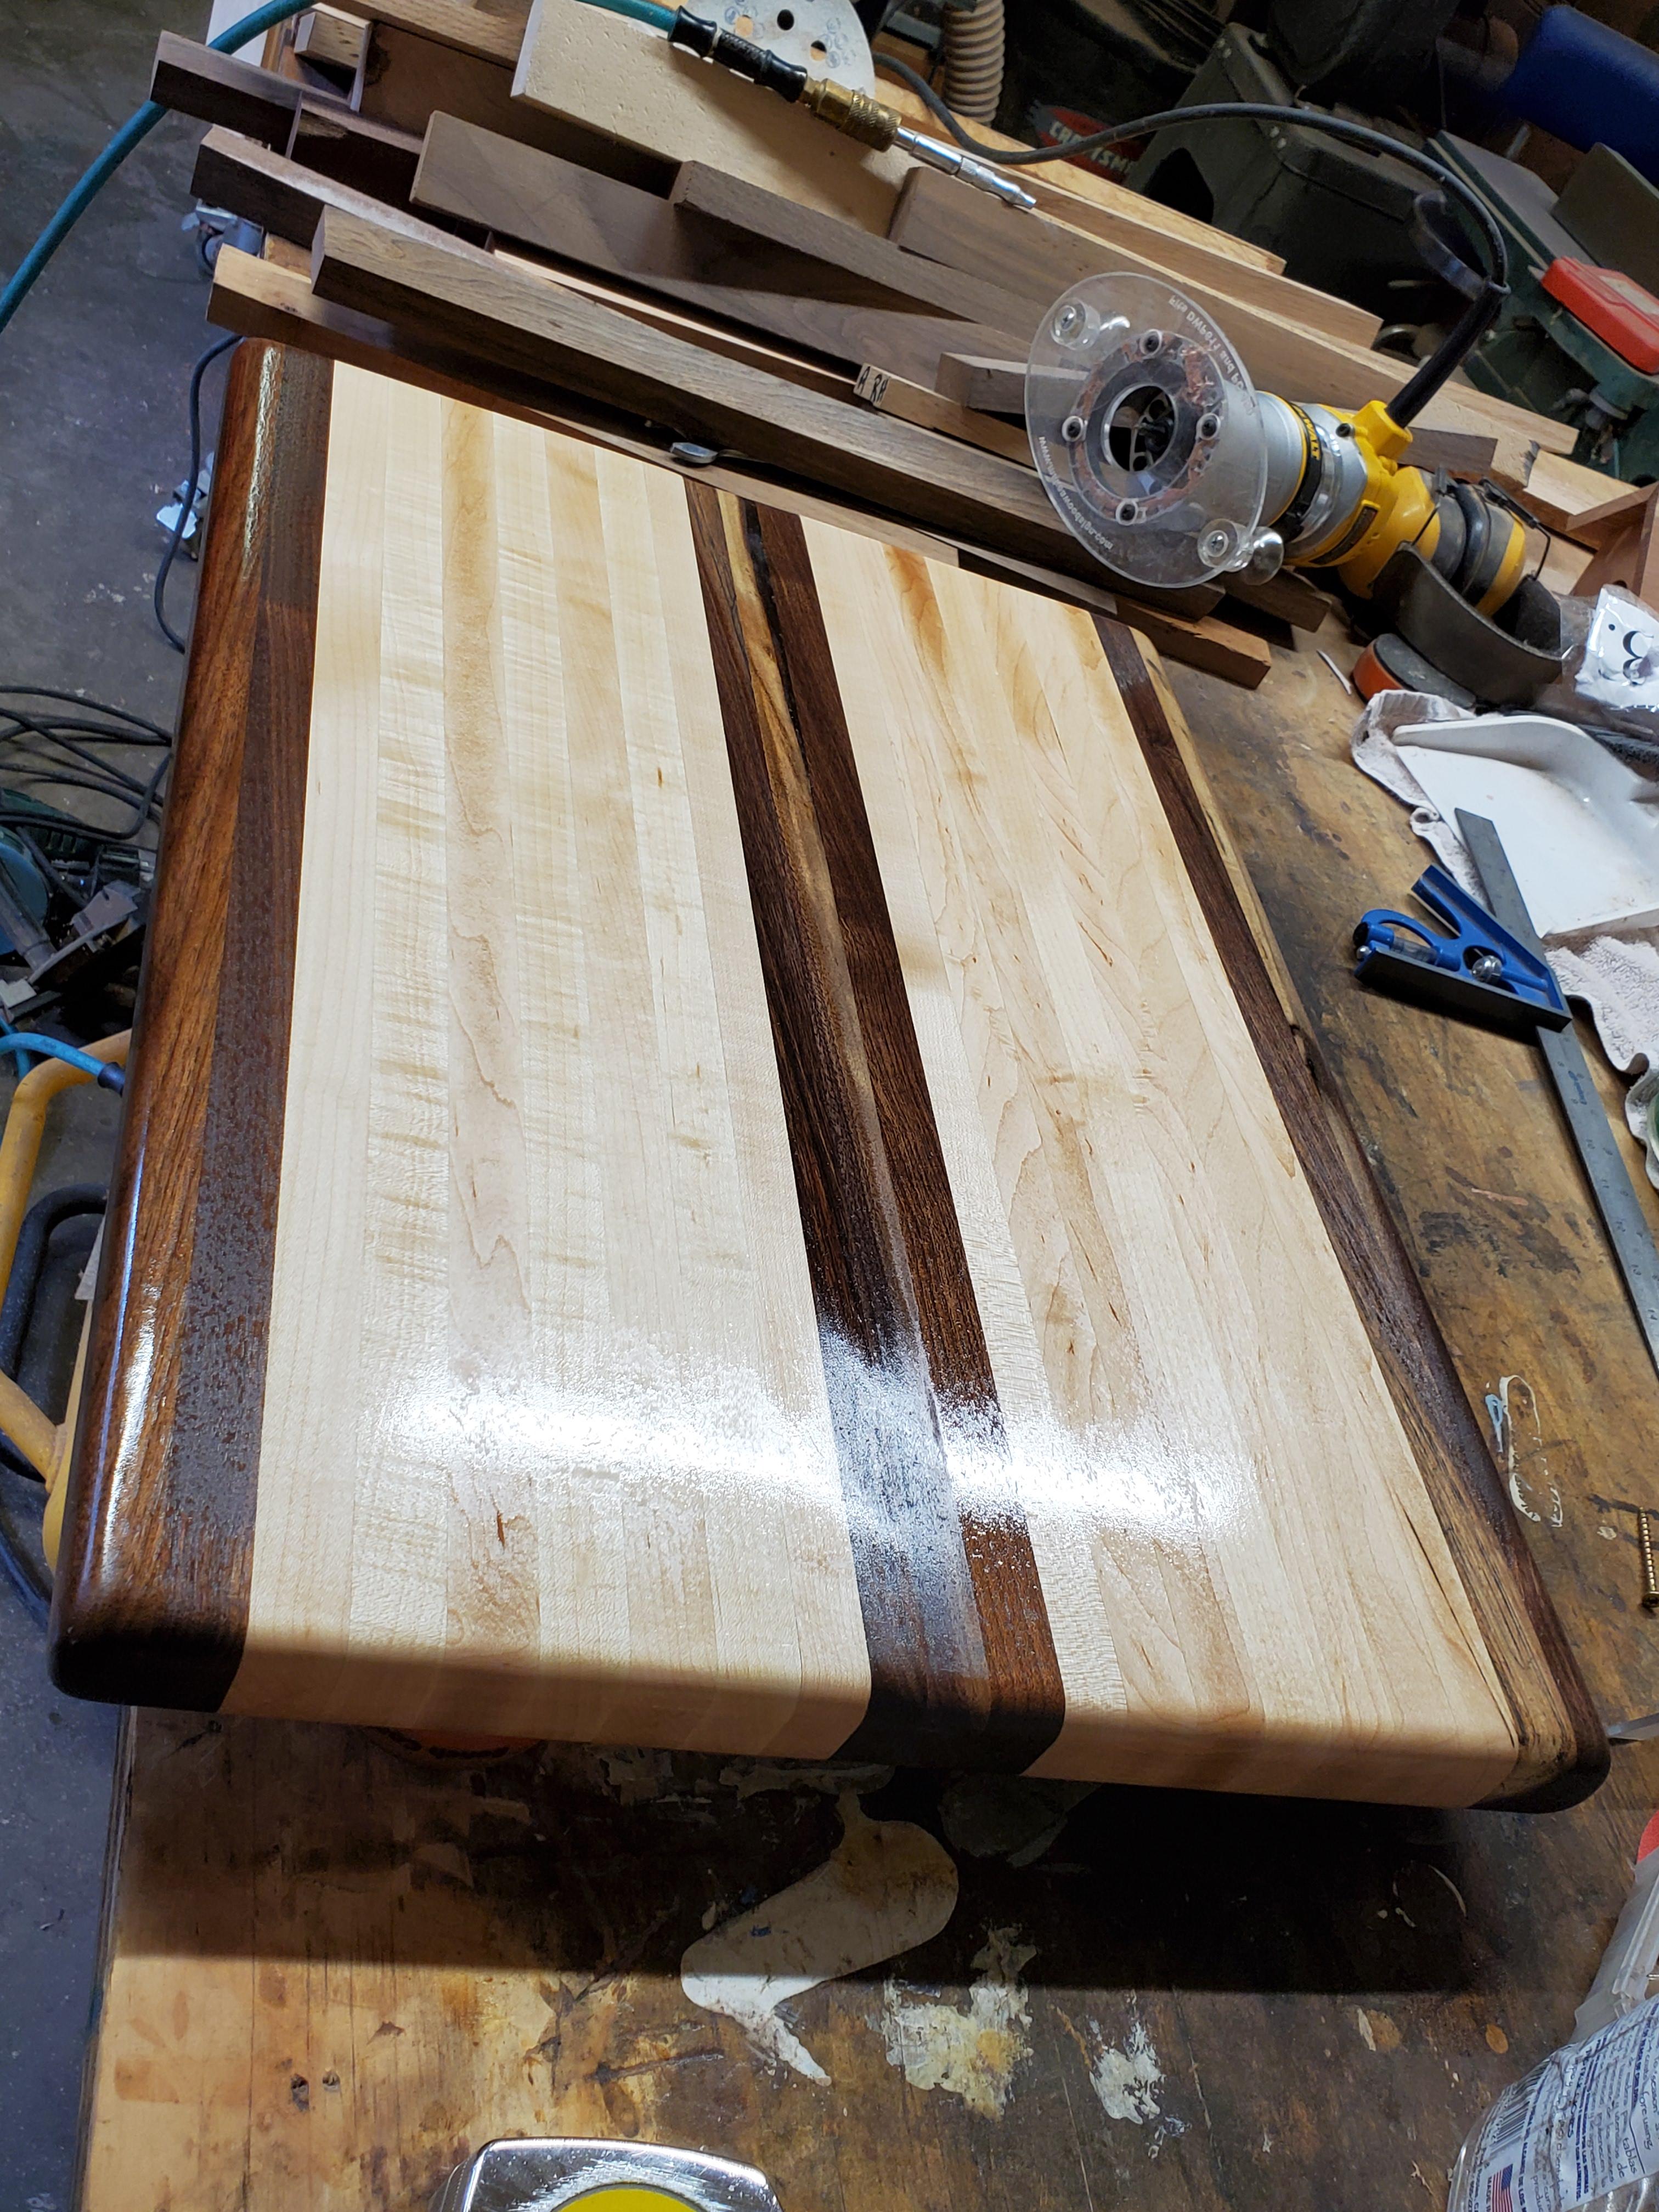 Walnut and hard maple heavy duty cutting board.